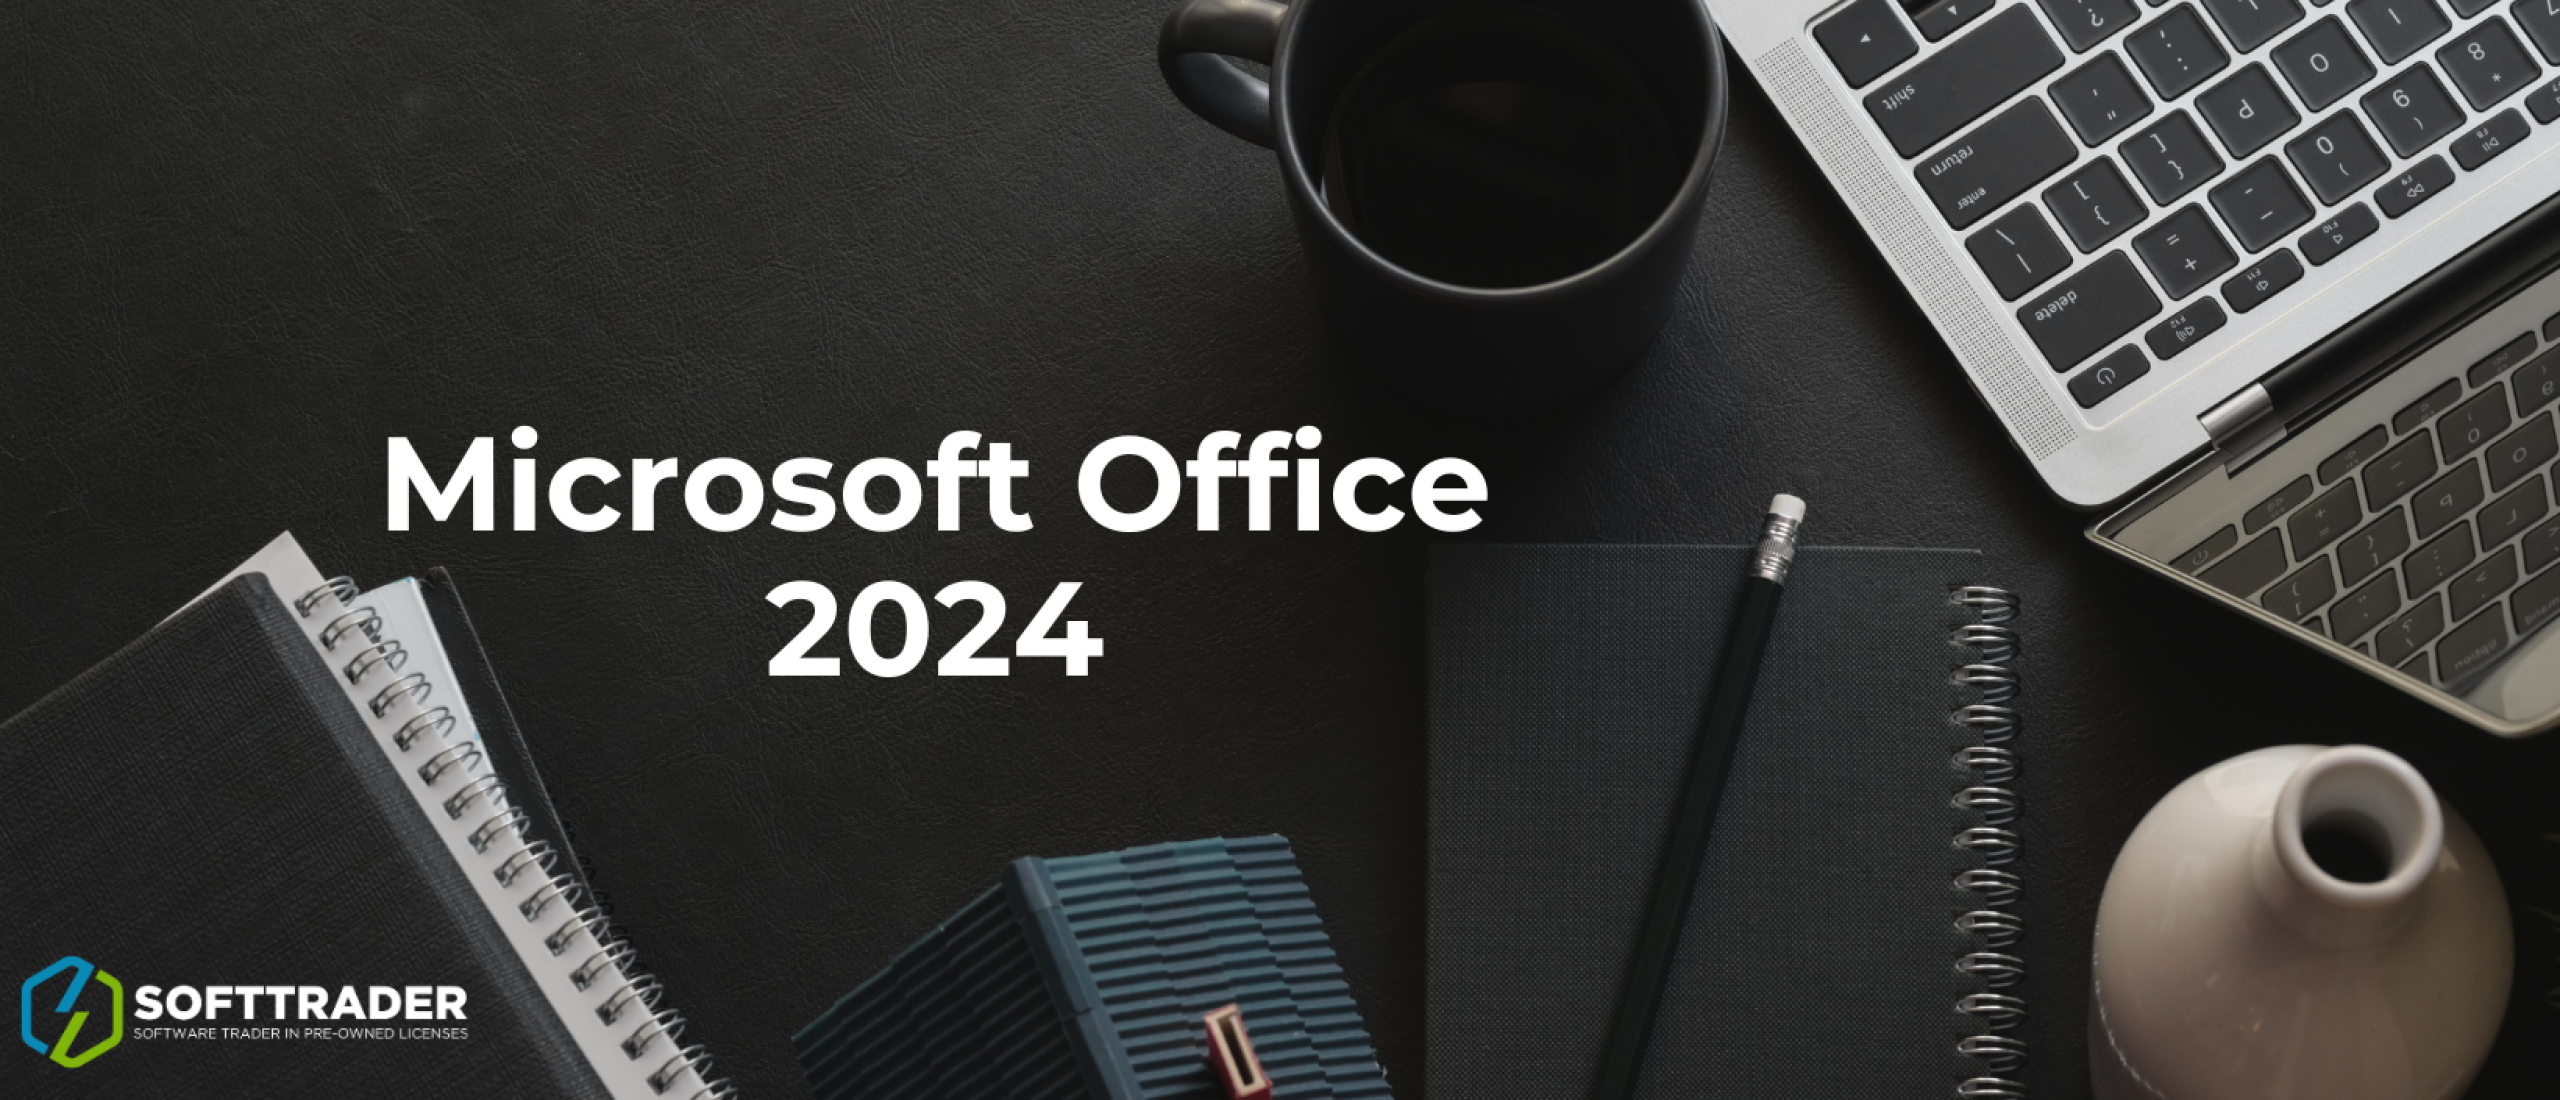 Microsoft Office 2024: Preview Build e nuove aggiunte